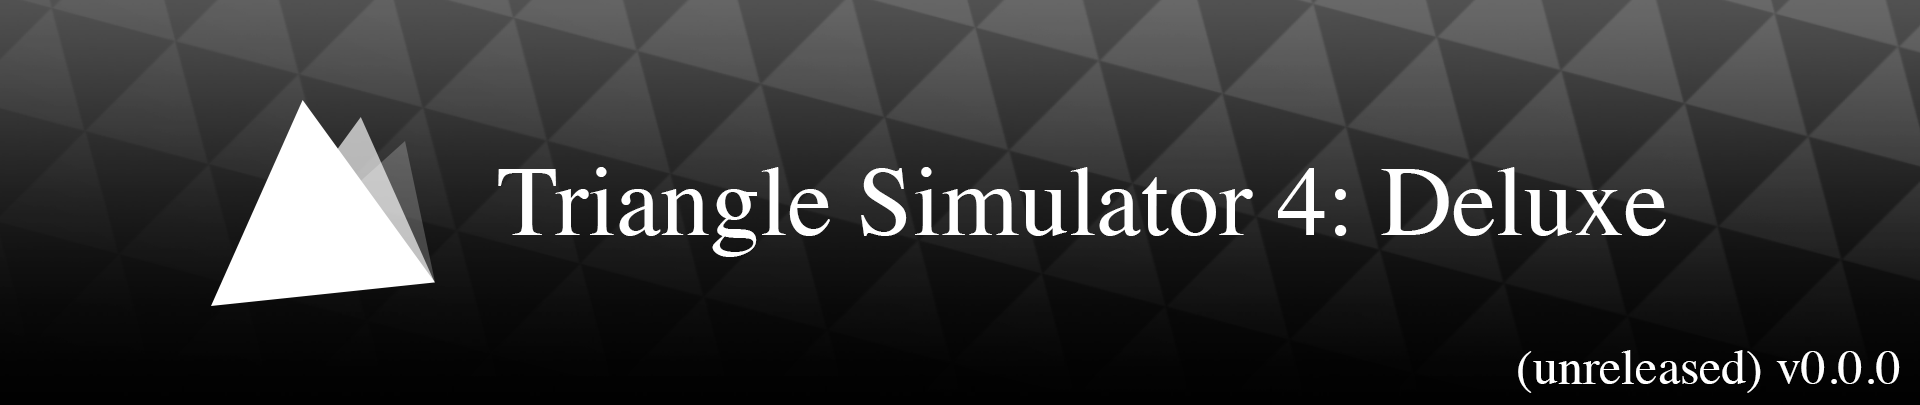 Triangle Simulator 4: Deluxe v0.1.0